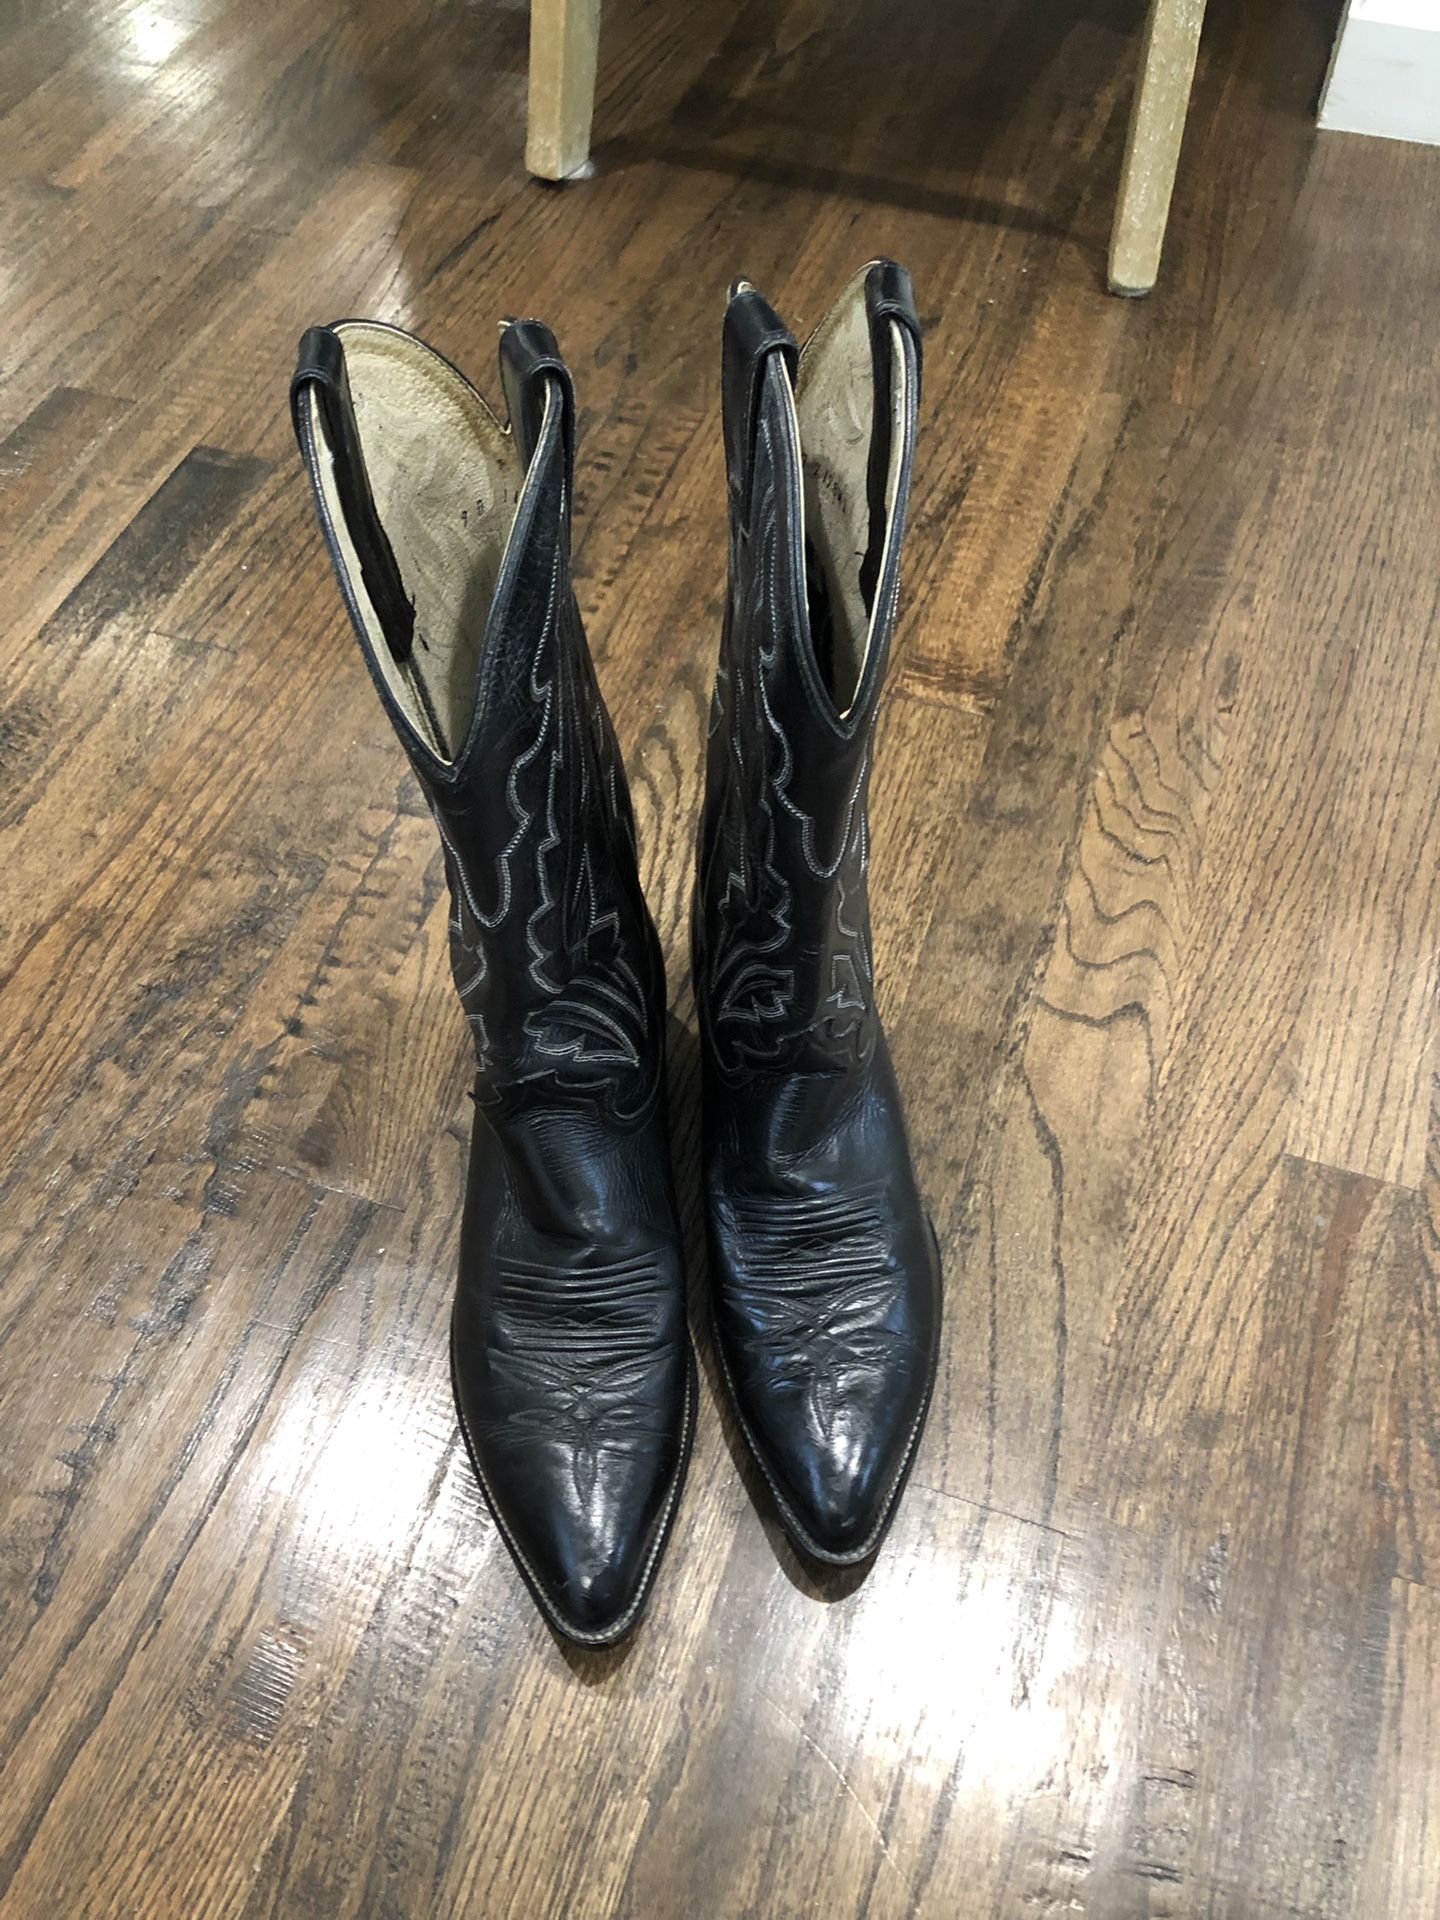 Diamond J Men’s leather boots. Size 9D